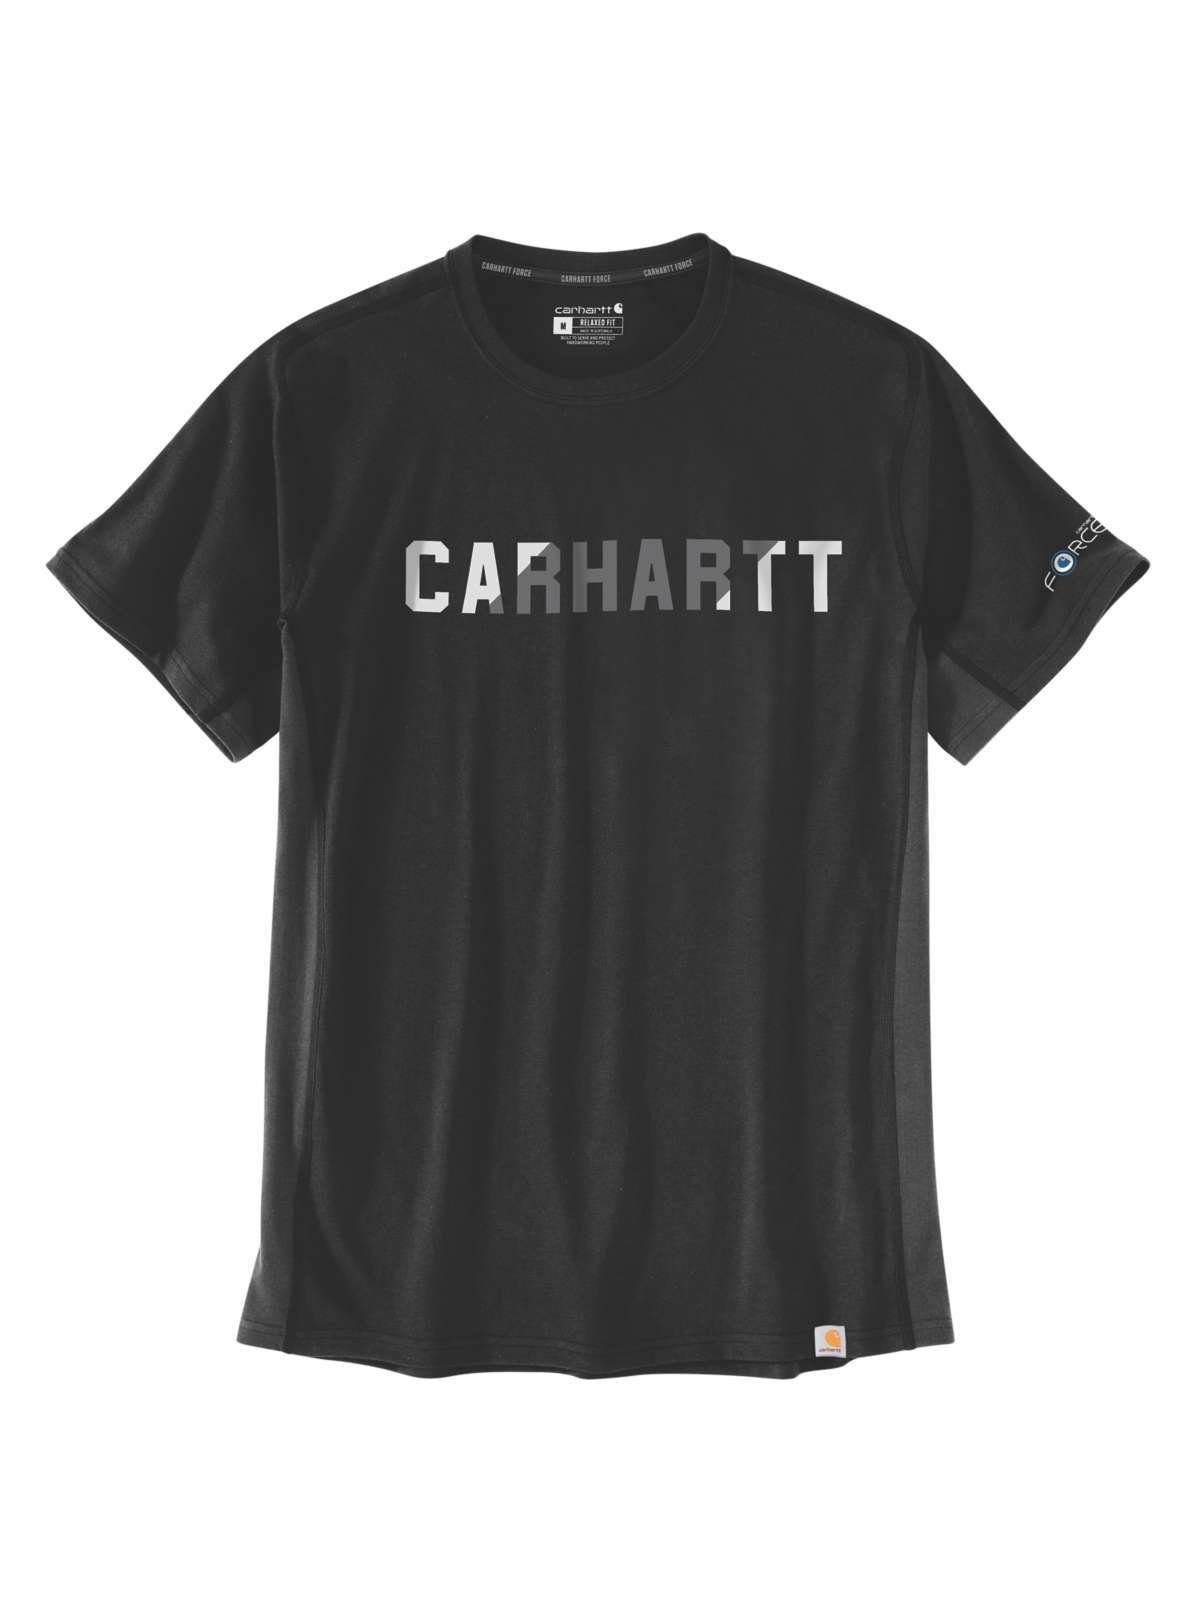 Carhartt Logo T-Shirt T-Shirt black Carhartt